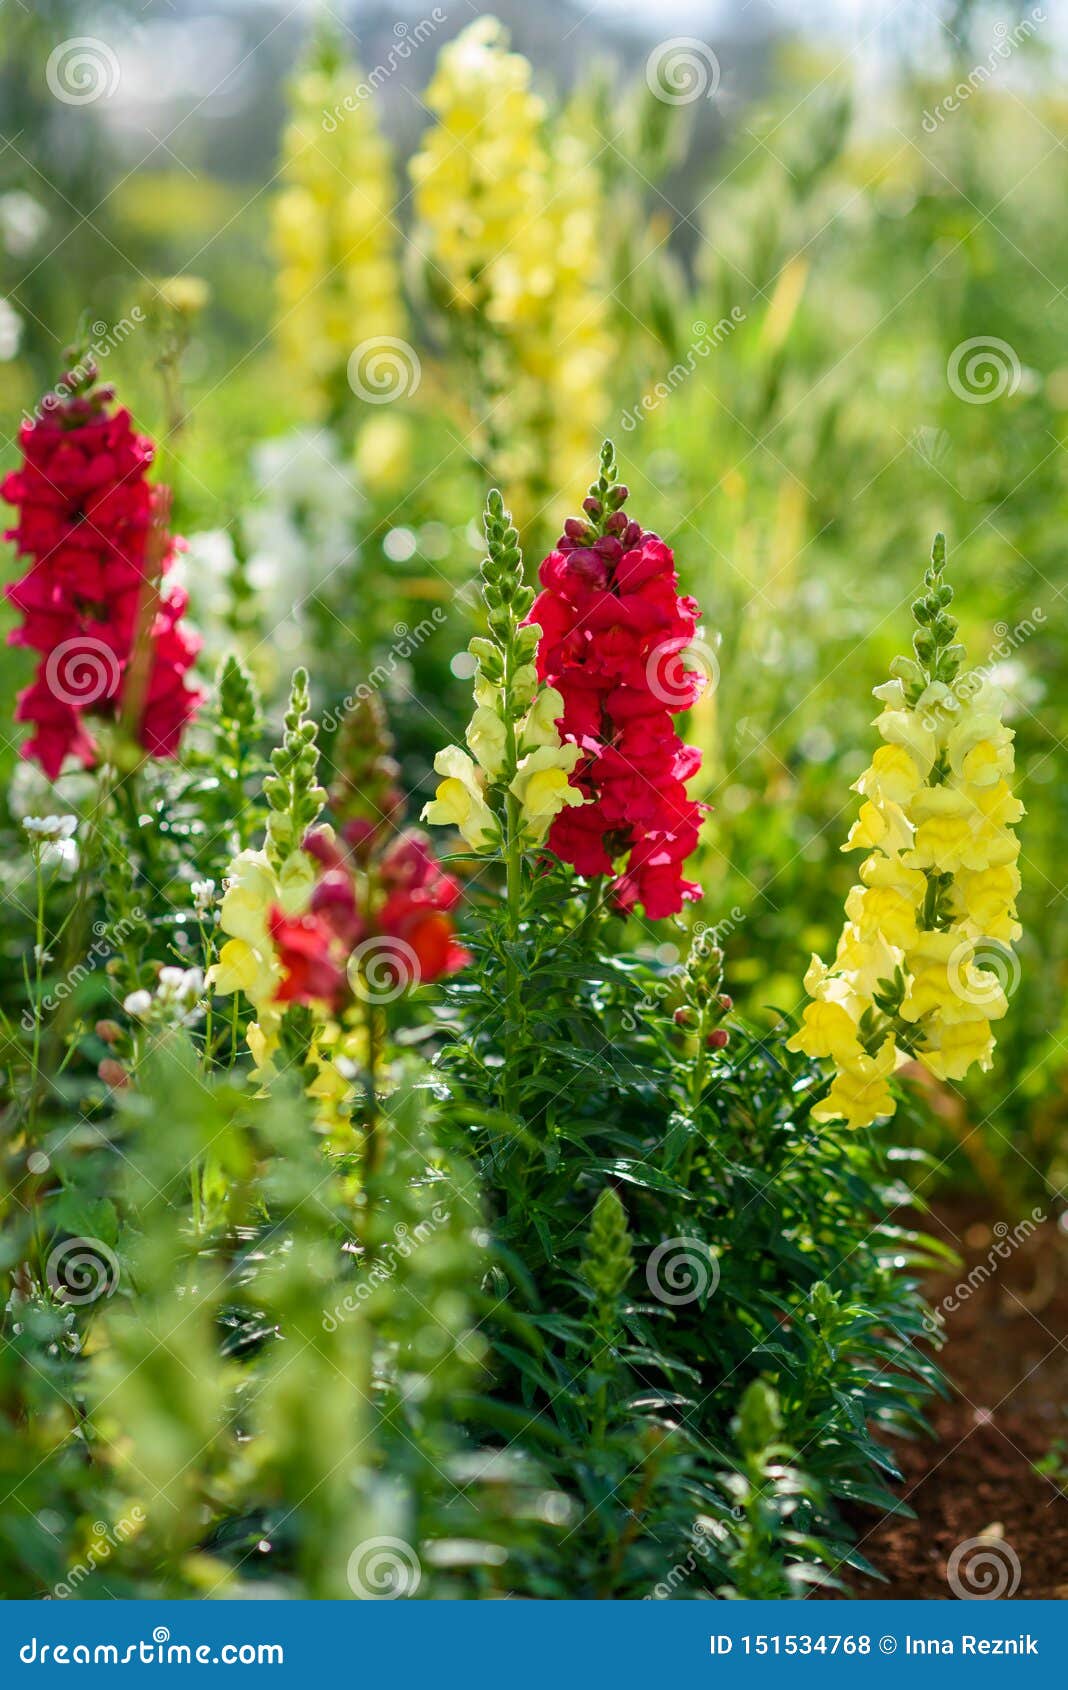 https://thumbs.dreamstime.com/z/o-boca-de-lobo-um-g-nero-das-plantas-conhecidas-geralmente-como-flores-ou-do-drag-jardim-no-ver-grupo-bonitas-rosa-e-em-cores-151534768.jpg